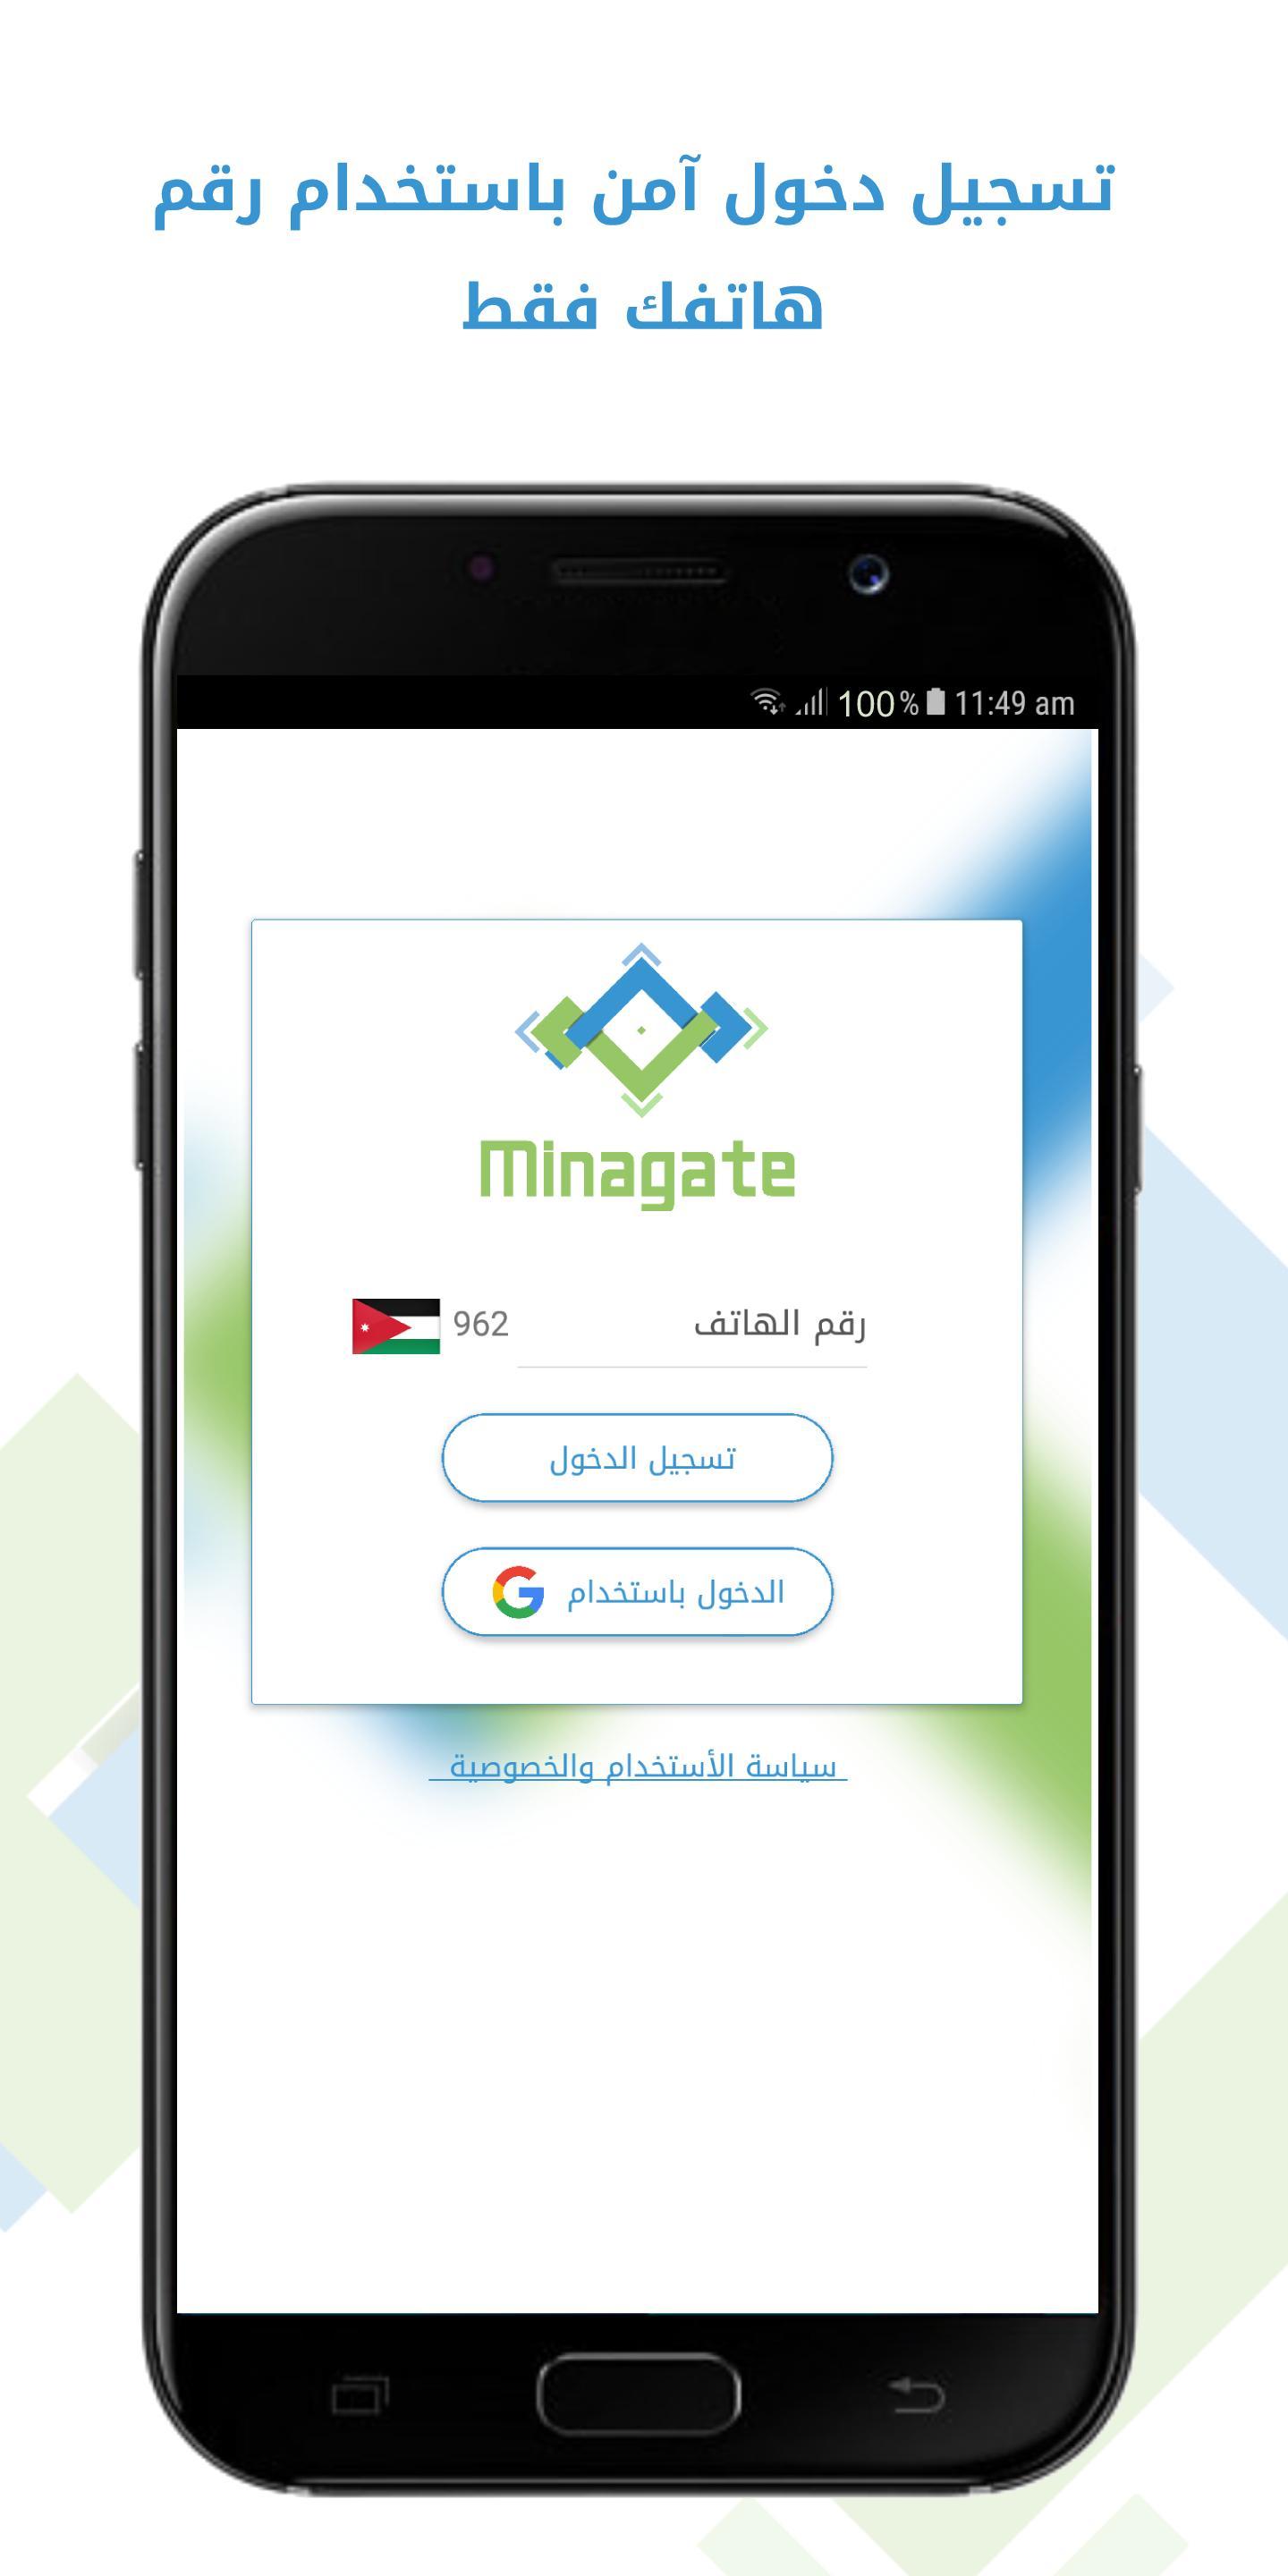 The description of Minagate App.